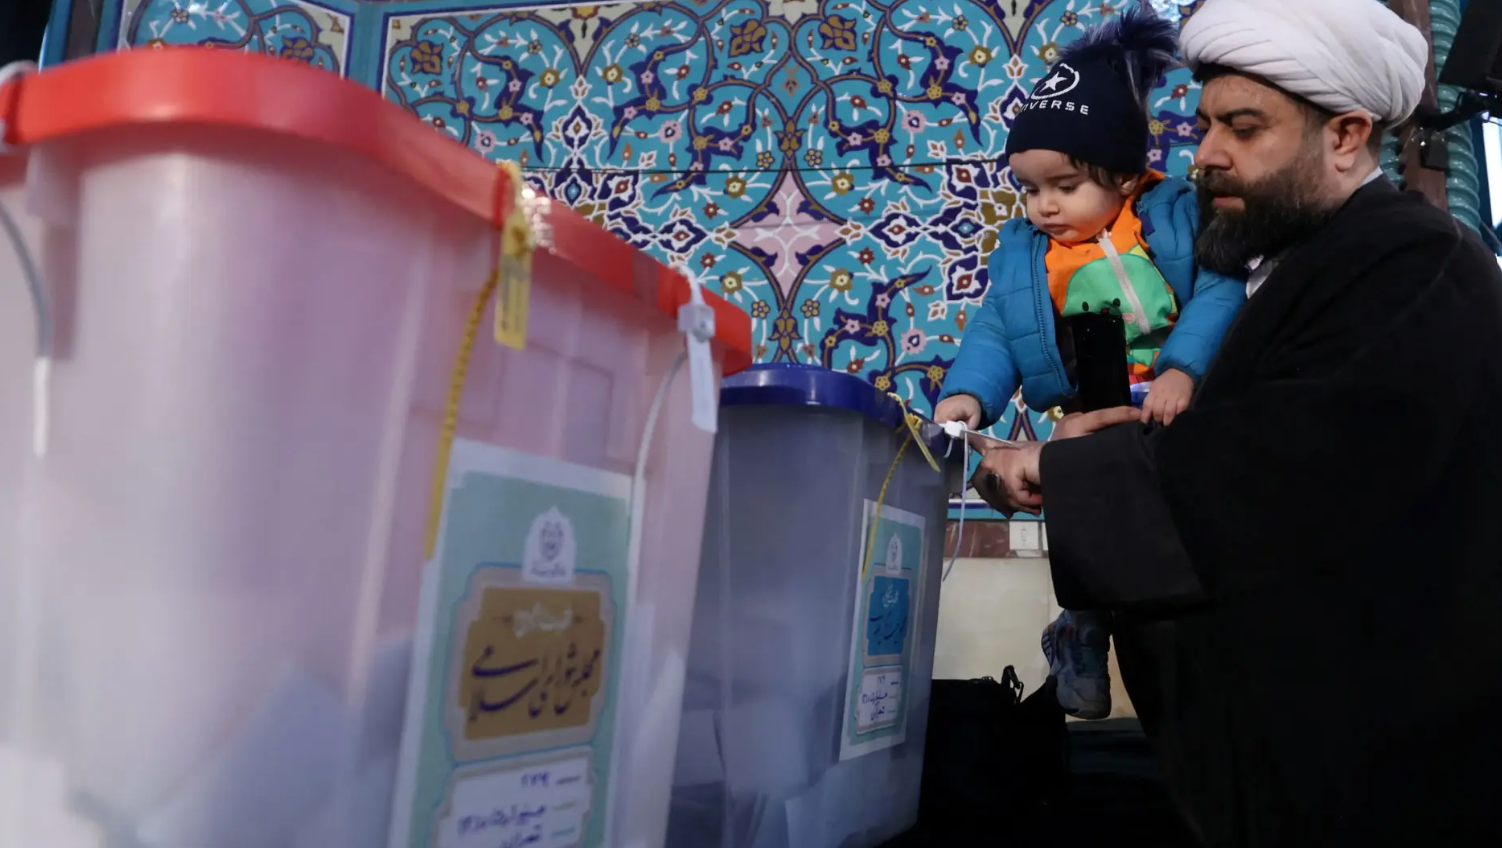 انتخابات مجلس الشورى والقيادة في إيران.. ما تأثيرها على الوضع العراقي؟ - عاجل